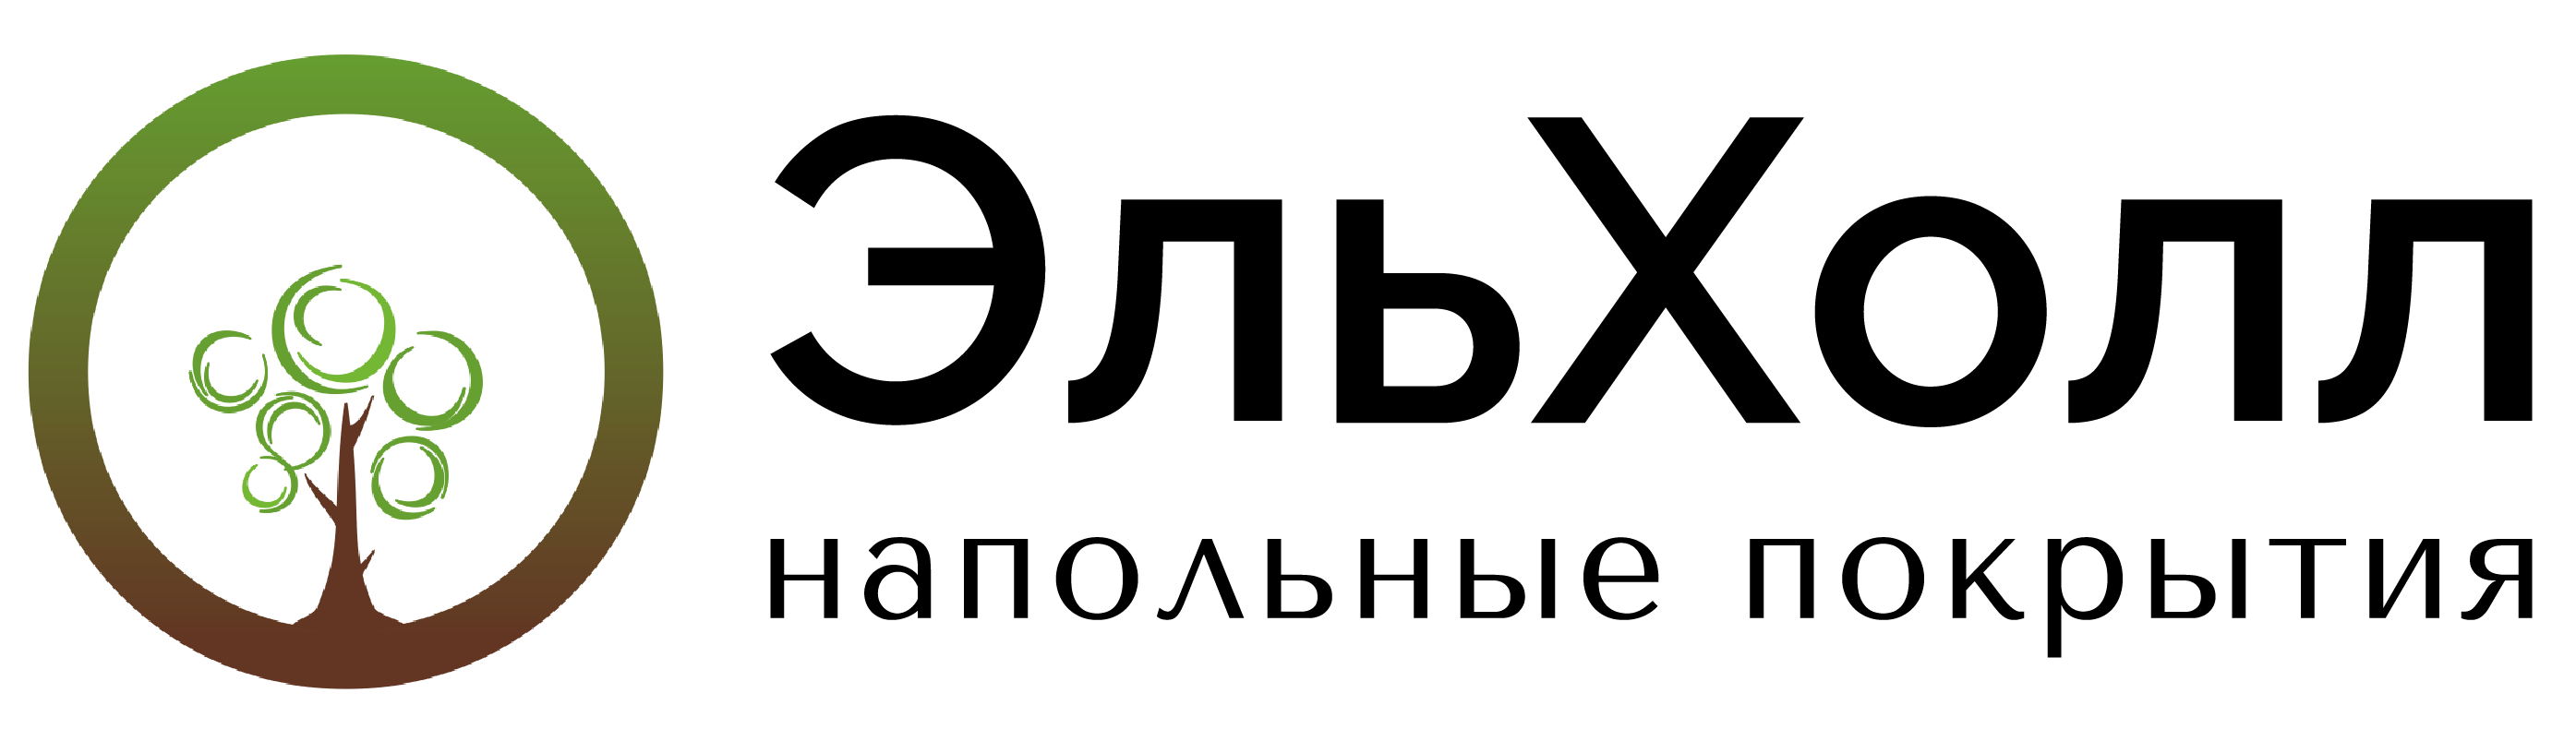 Логотип ЭЛЬХОЛЛ.